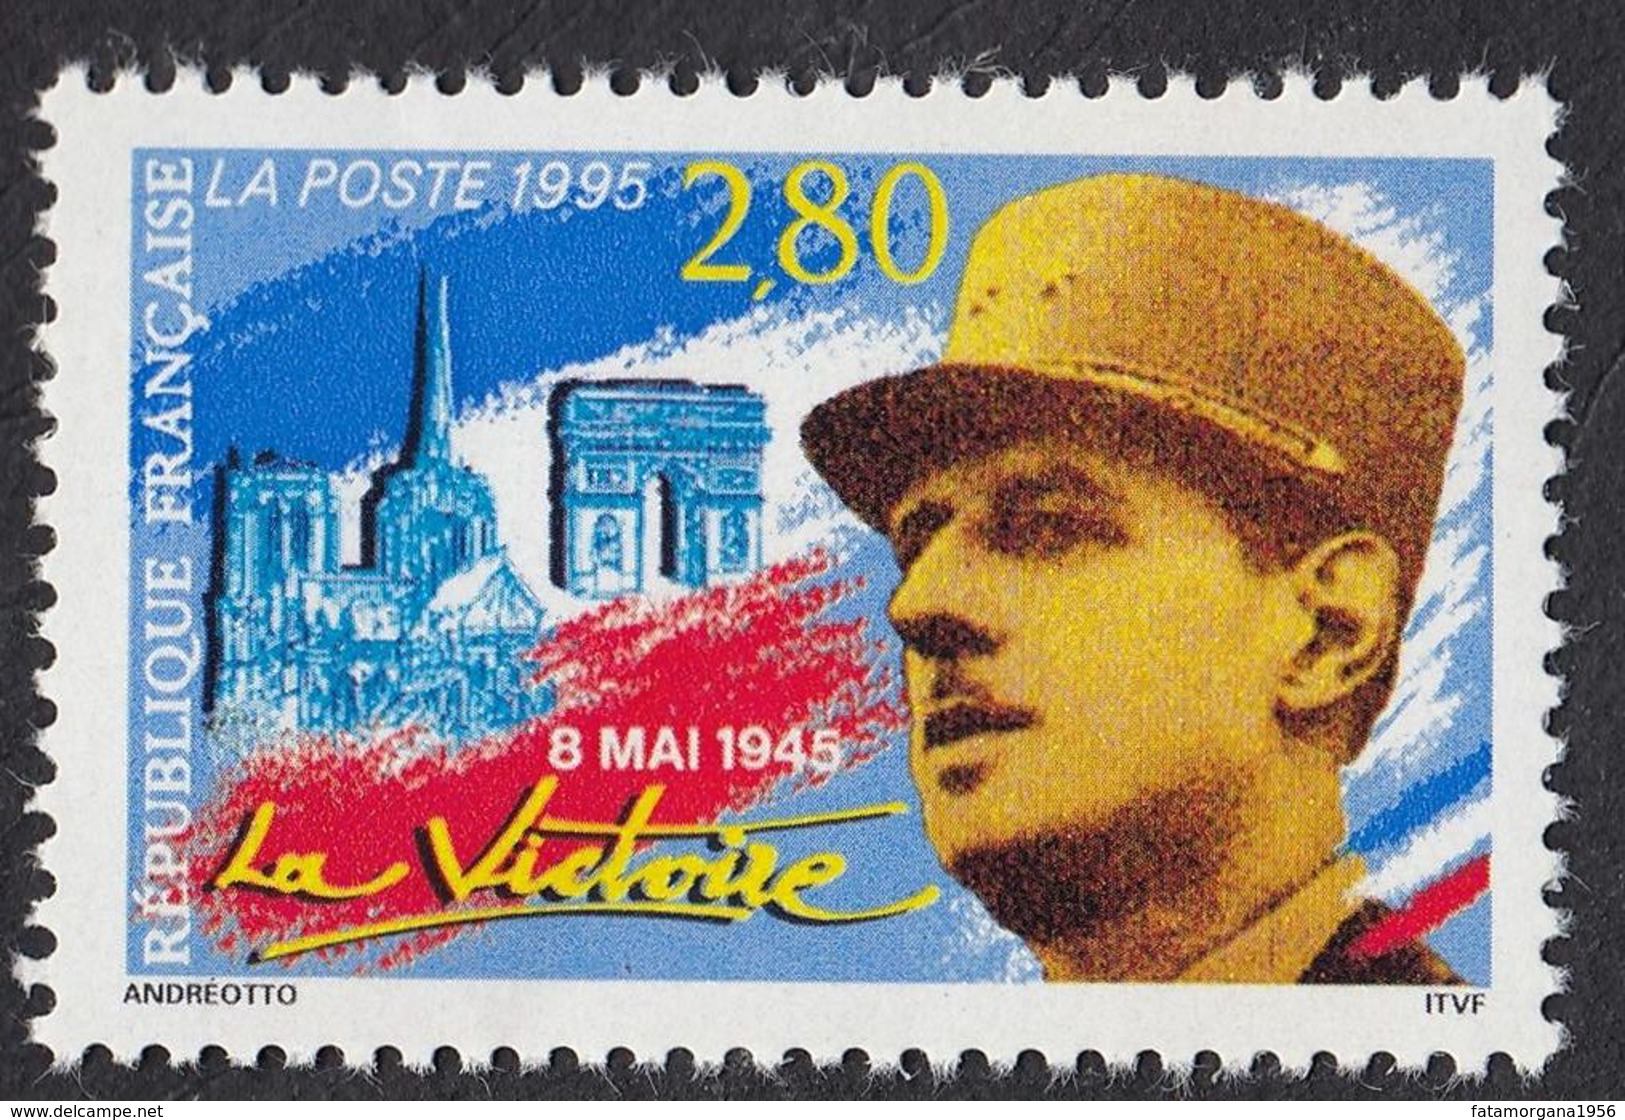 FRANCE - 1995 - Yvert 2944, 8 Mai 1945, La Victoire, 2,80 F, Neuf, Parfait. - Unused Stamps